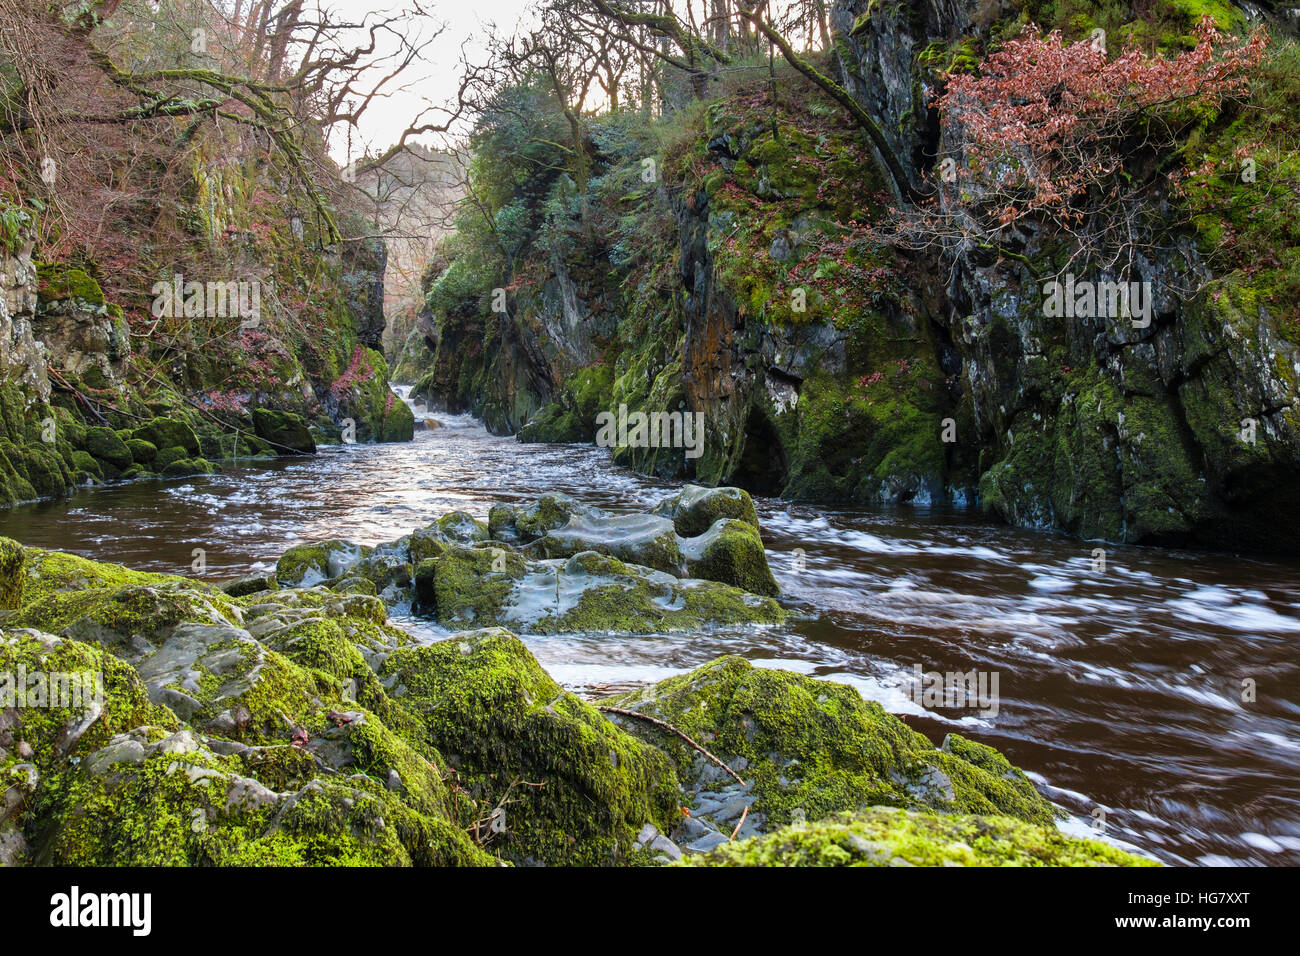 Auf der Suche stromaufwärts entlang Afon Conwy Fluss fließt durch enge Fairy Glen-Schlucht in Snowdonia-Nationalpark Betys-y-Coed Wales UK Stockfoto